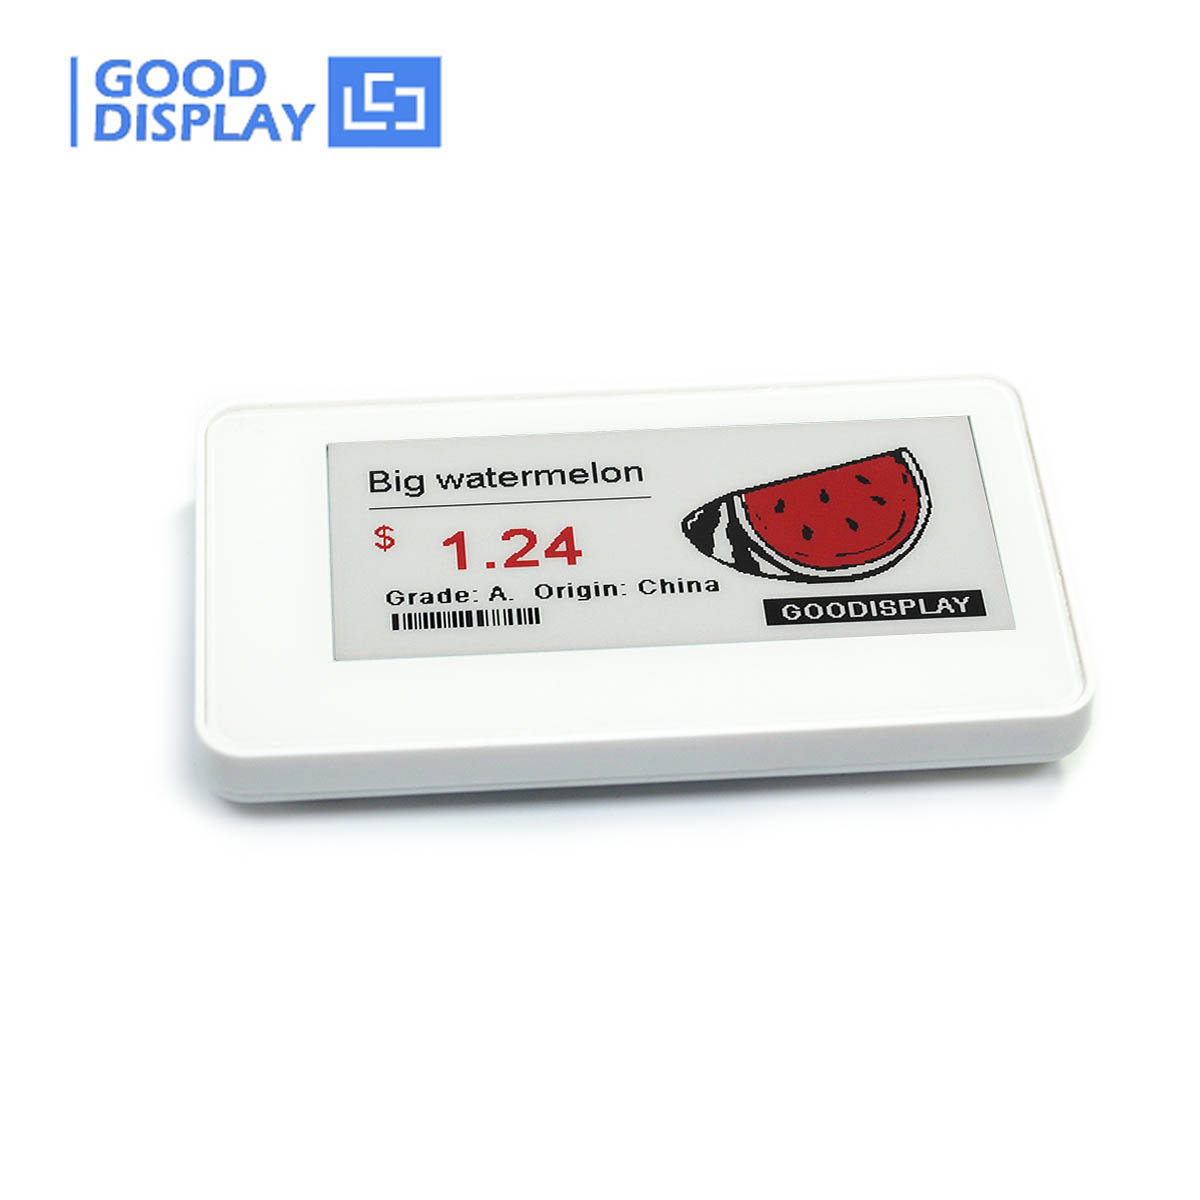 2.9寸 黑白红三色NFC电子货架标签/无电池/无线传输电子标签 GDN029R